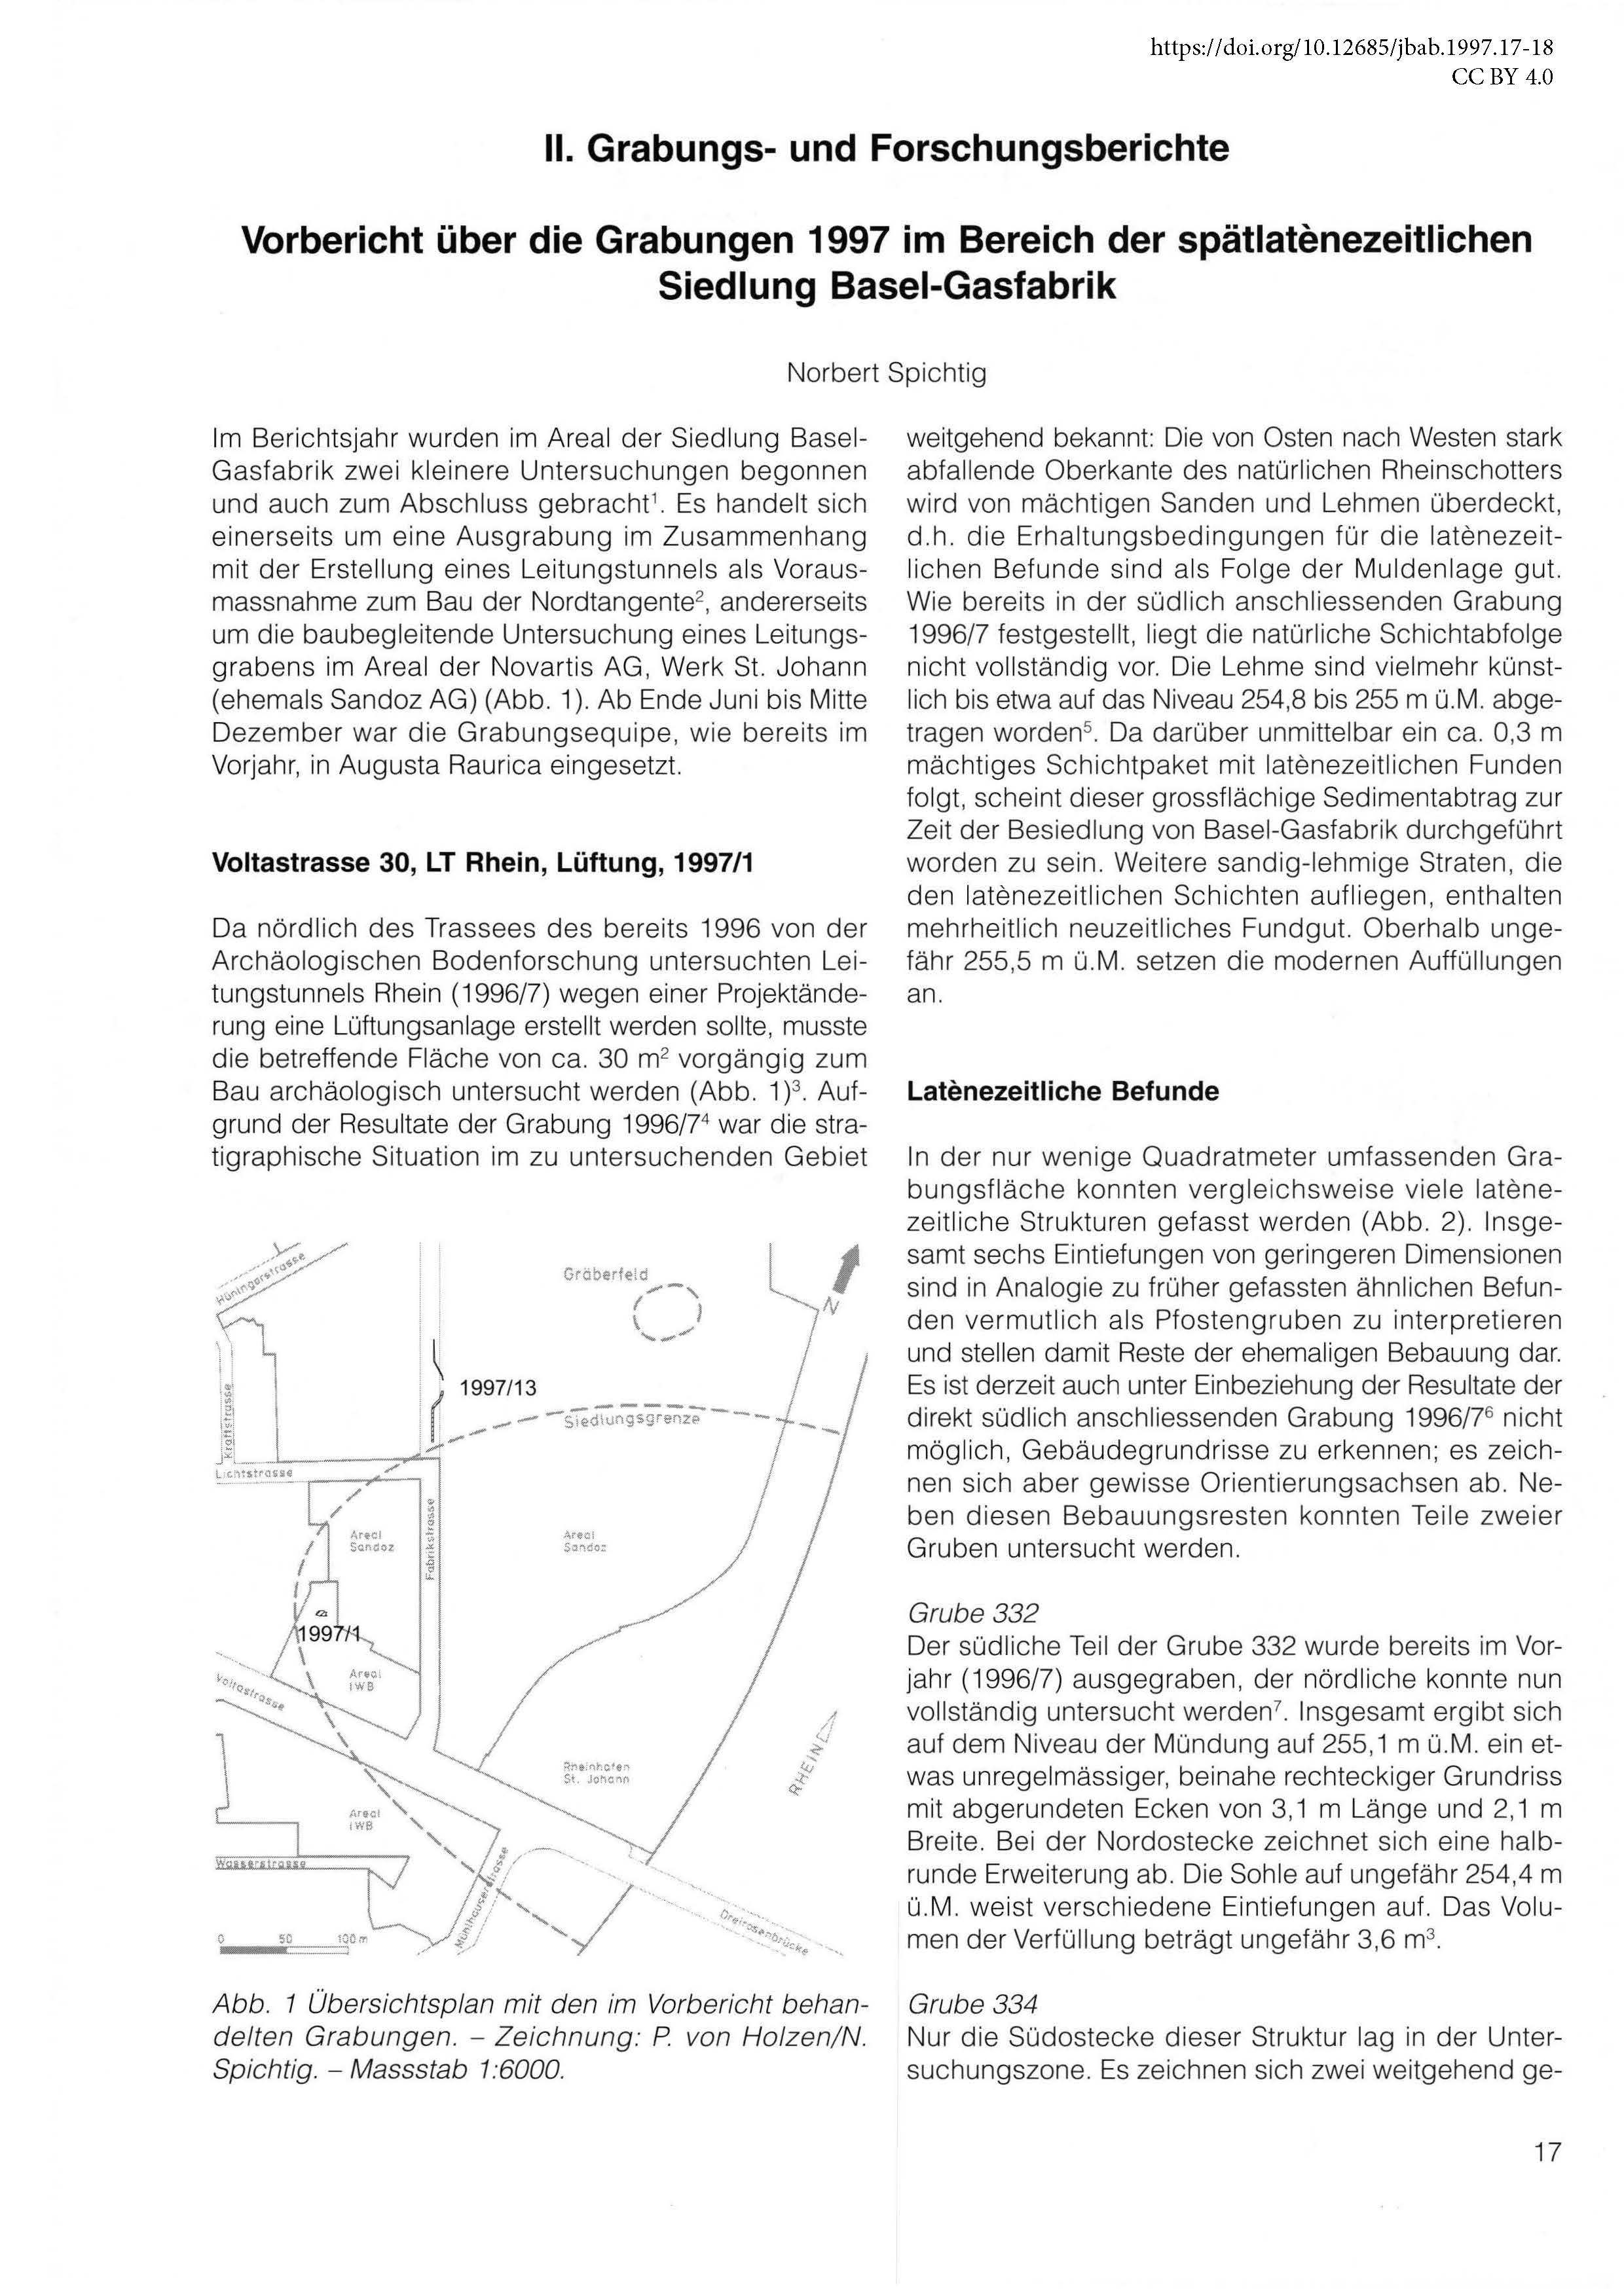 Erste Seite des Vorberichts zu den Grabungen in Basel-Gasfabrik